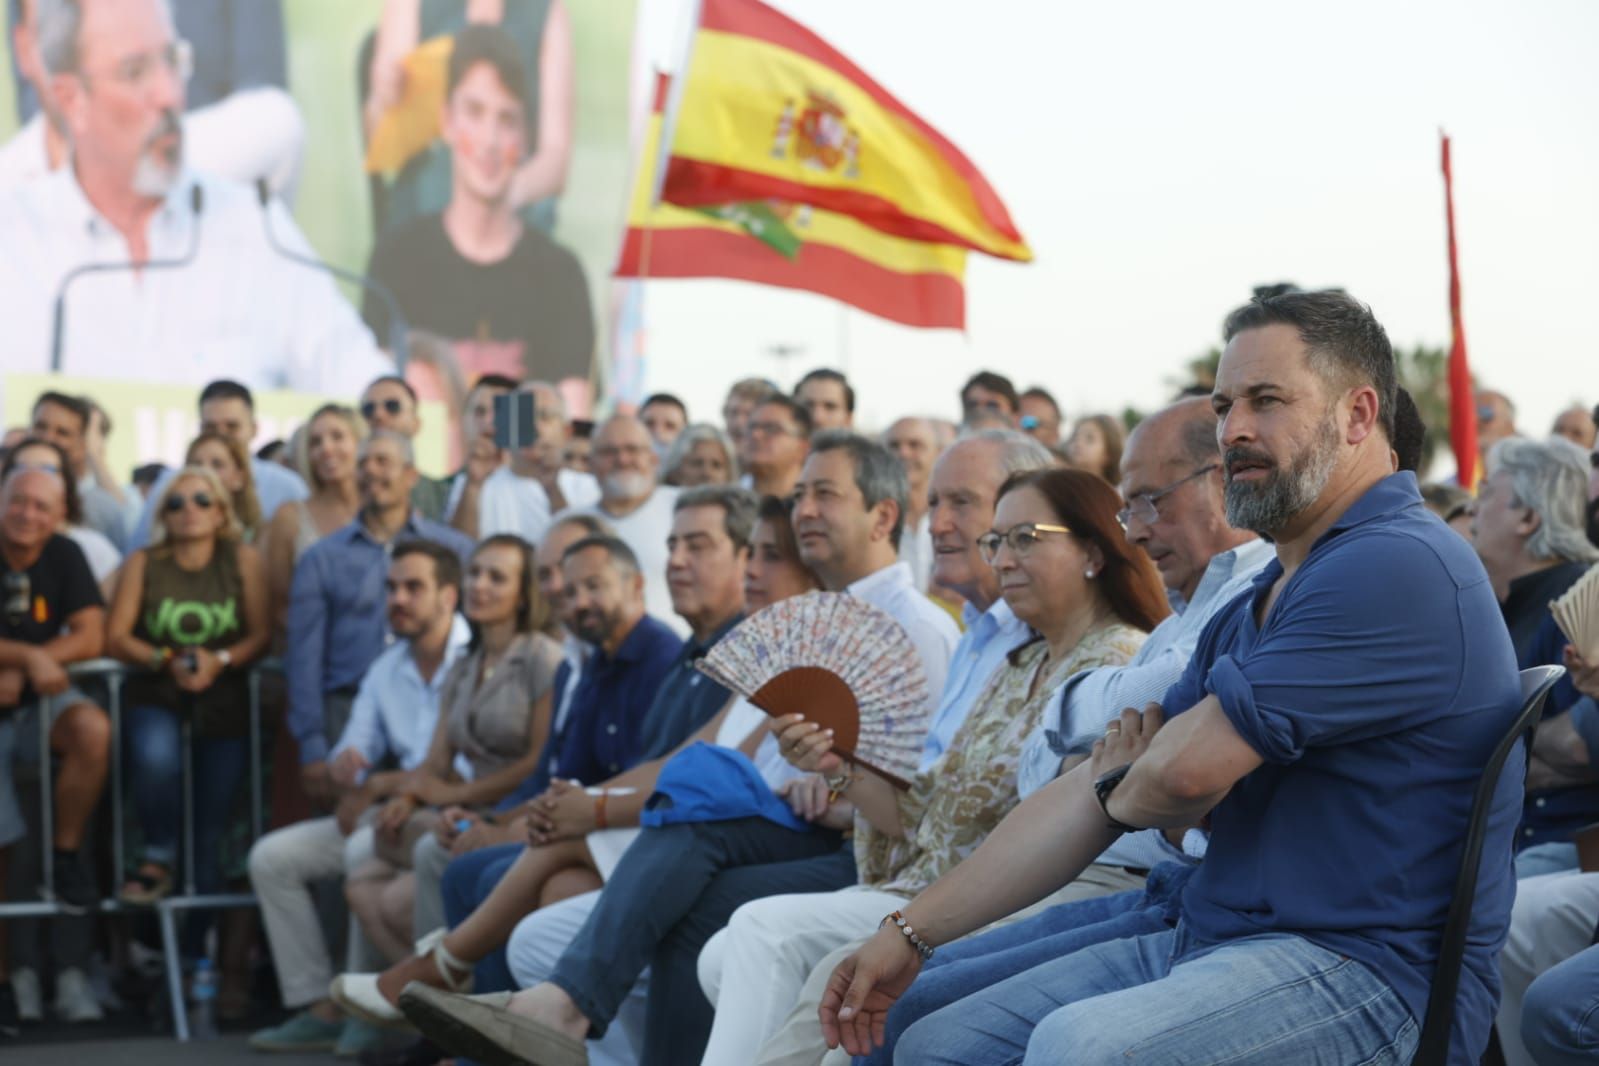 Santiago Abascal participa en un acto electoral Vox en la Marina de València